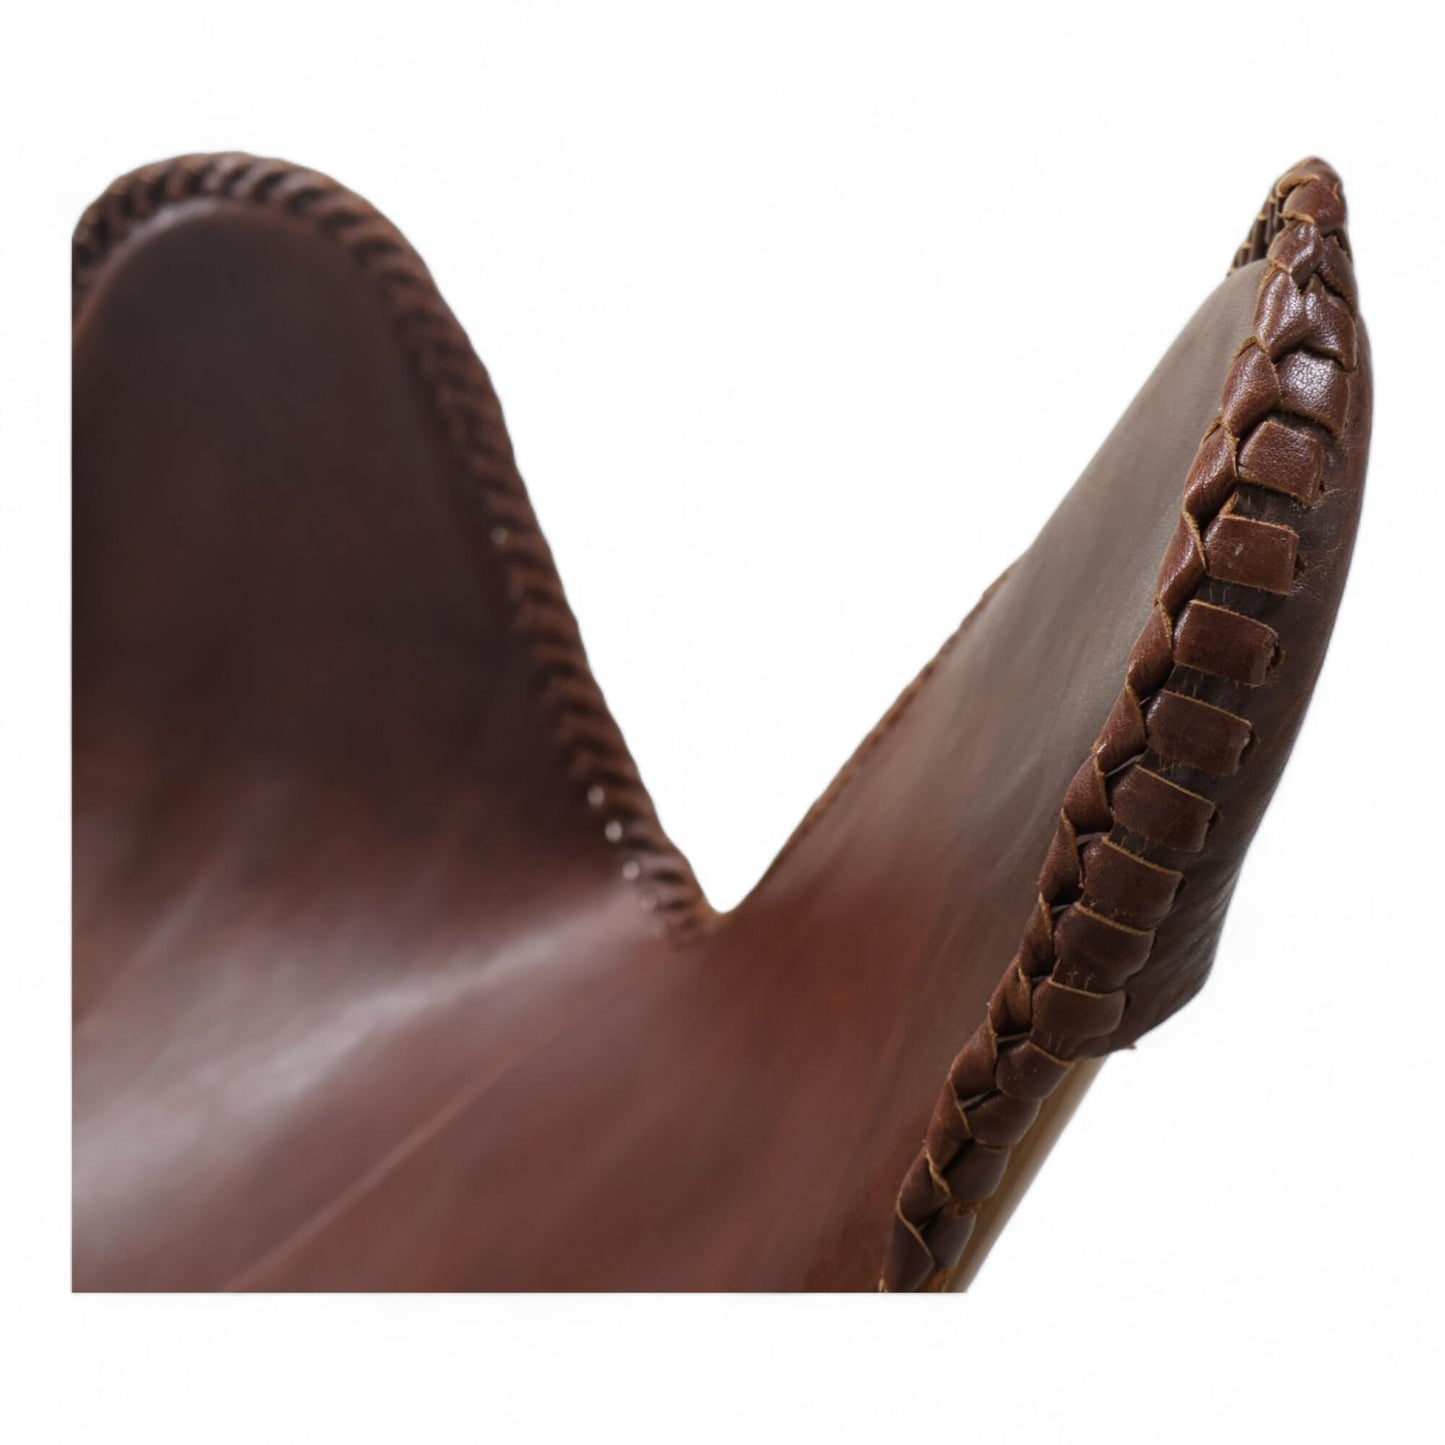 Nyrenset | Mørk brun lenestol "Butterfly chair" i skinn